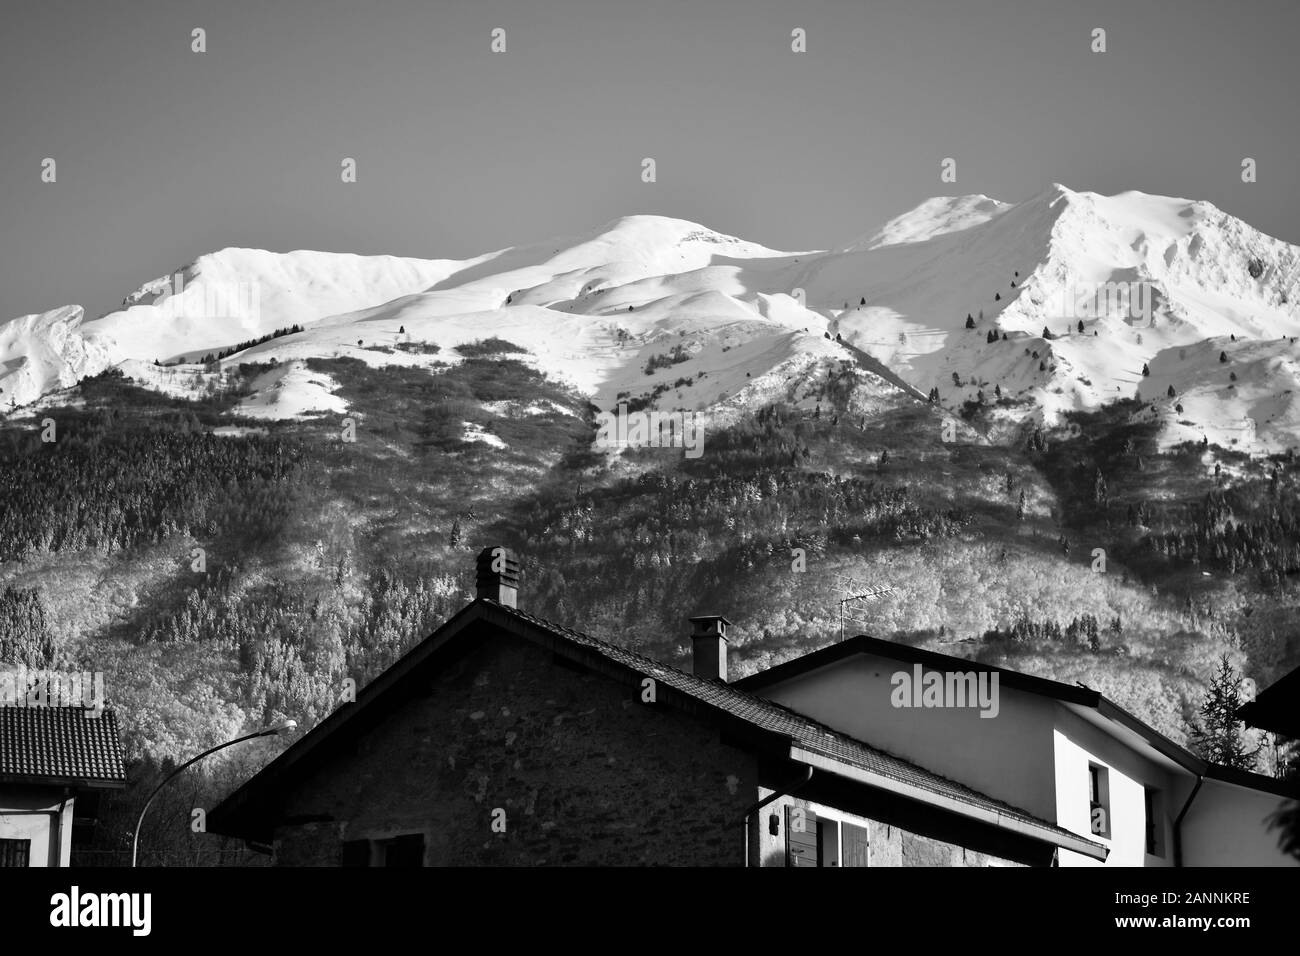 Monte Serva, the symbol of the city of Belluno, Italy Stock Photo